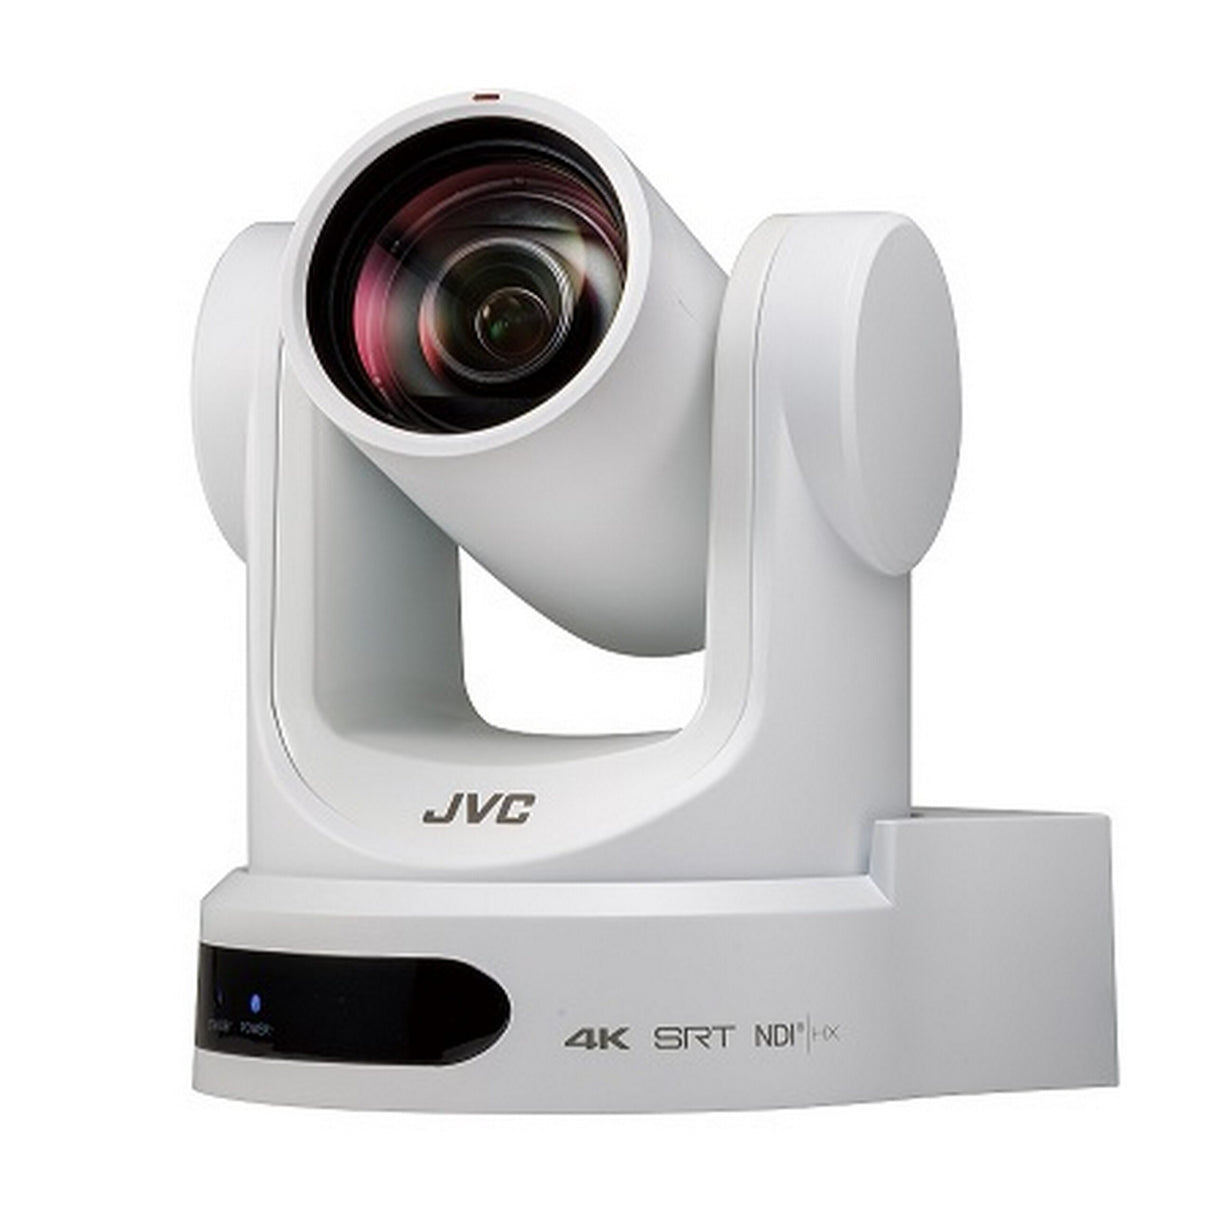 JVC KY-PZ400NWU 4K PTZ Remote Camera with NDI/HX, White